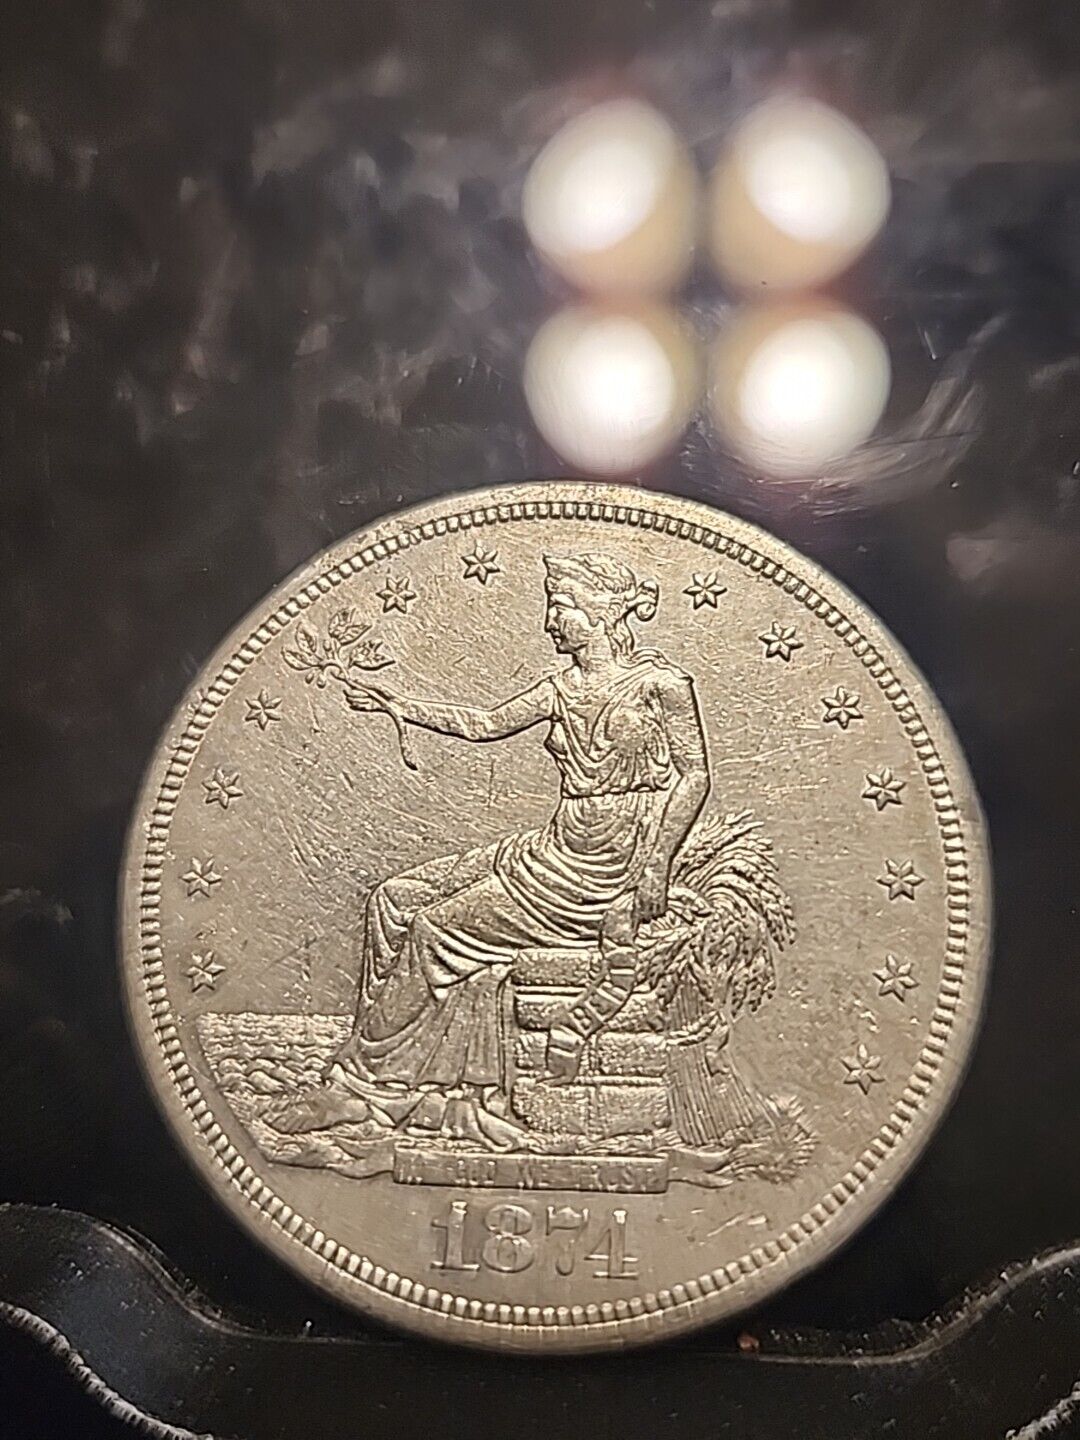 1874 cc trade dollar